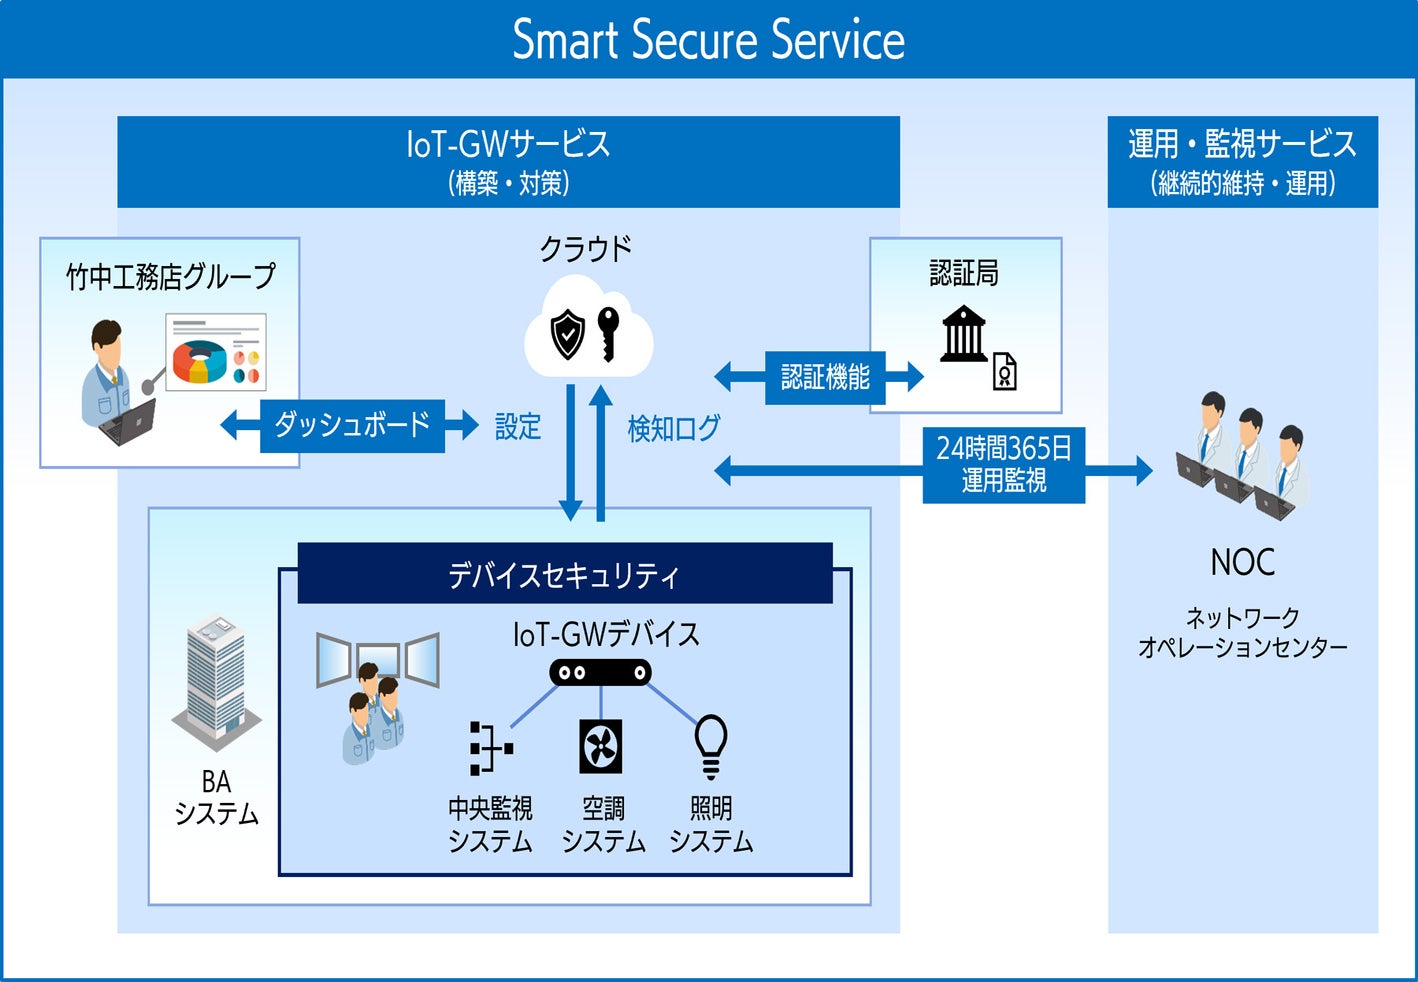 竹中セントラルビル サウスにおける「Smart Secure Service」の仕組み簡略図